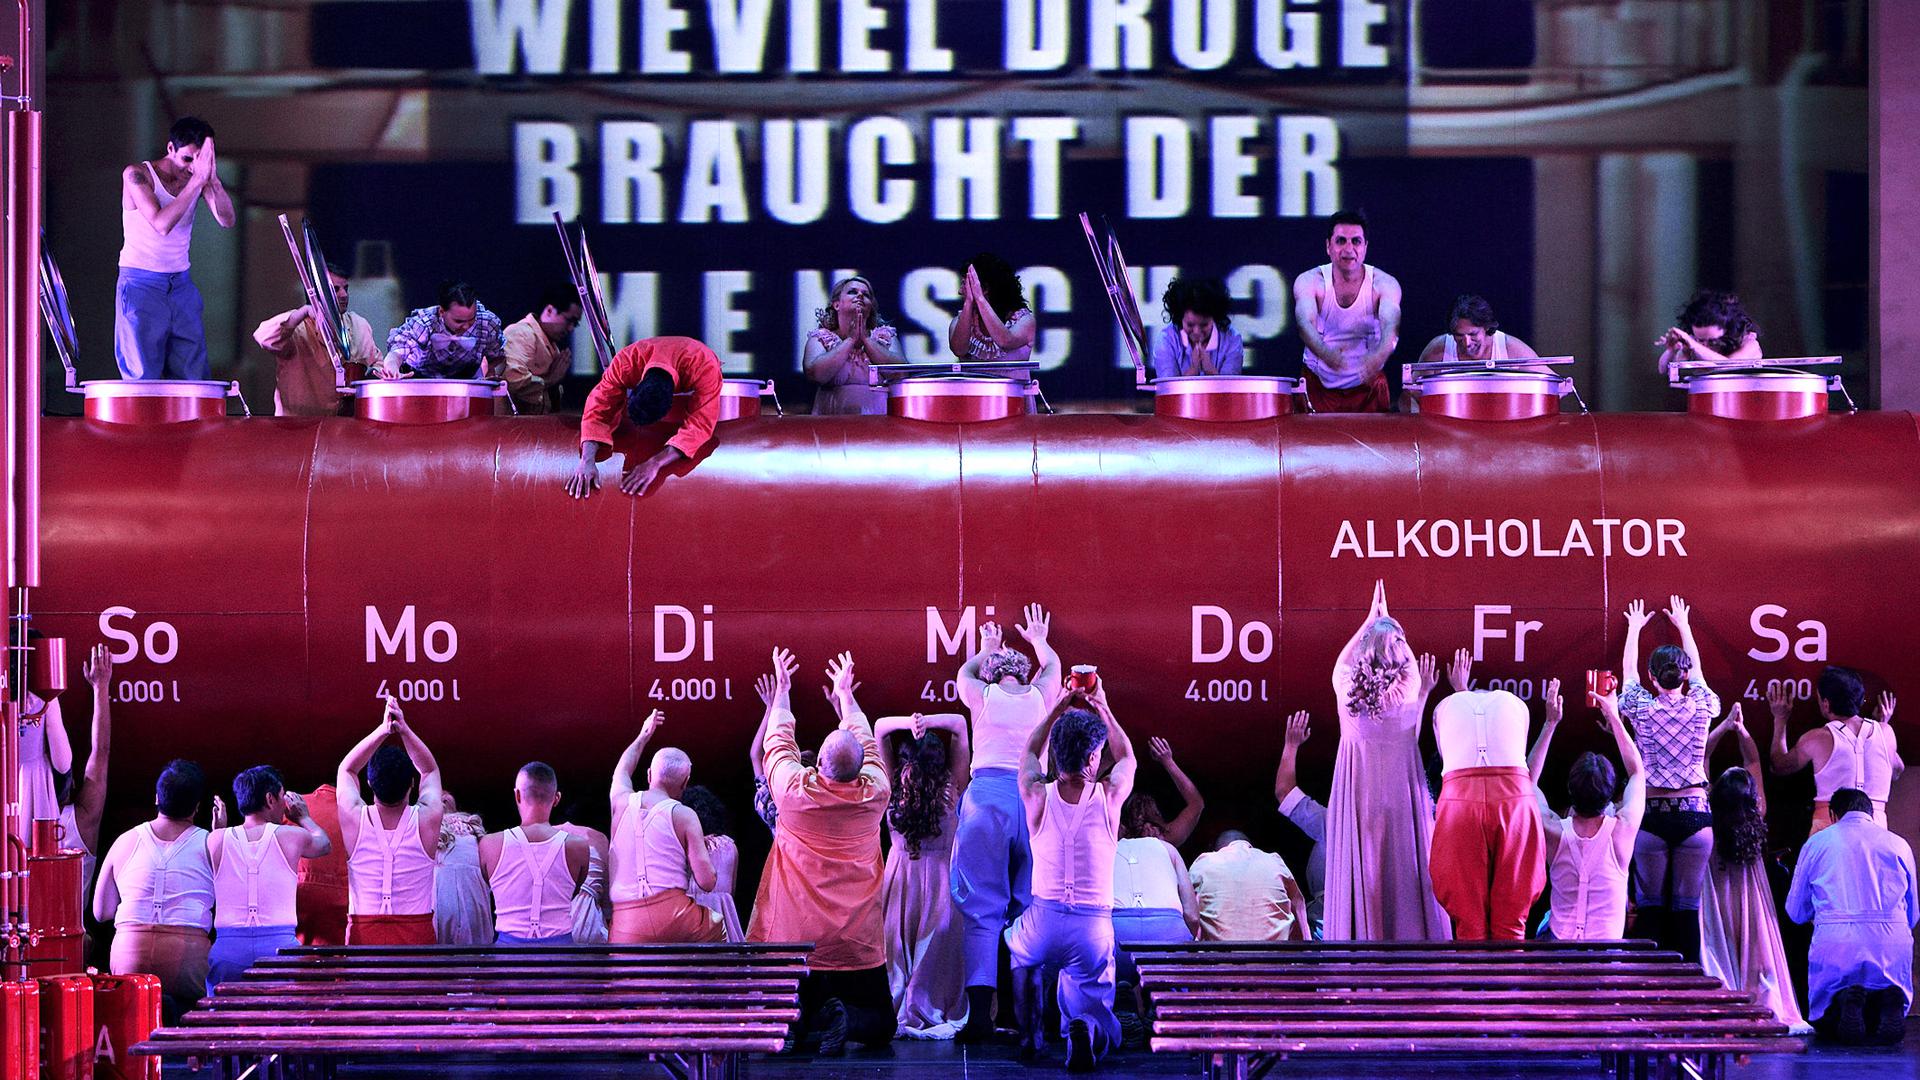 HANDOUT - "Tannhäuser", Probenfoto von 2014, 2. Akt, Bühnenbild. Die Wagner-Oper wird bei den Bayreuther Festspielen 2014 in Bayreuth (Bayern) erstmals am 25.07.2014 aufgeführt. dpa ACHTUNG: Honorarfreie Verwendung nur mit vollständiger Nennung der Quelle Foto: Bayreuther Festspiele/Enrico Nawrath. Verwendung im Internet nur bei max. Größe 800 x 800 Pixel ++ +++ dpa-Bildfunk +++